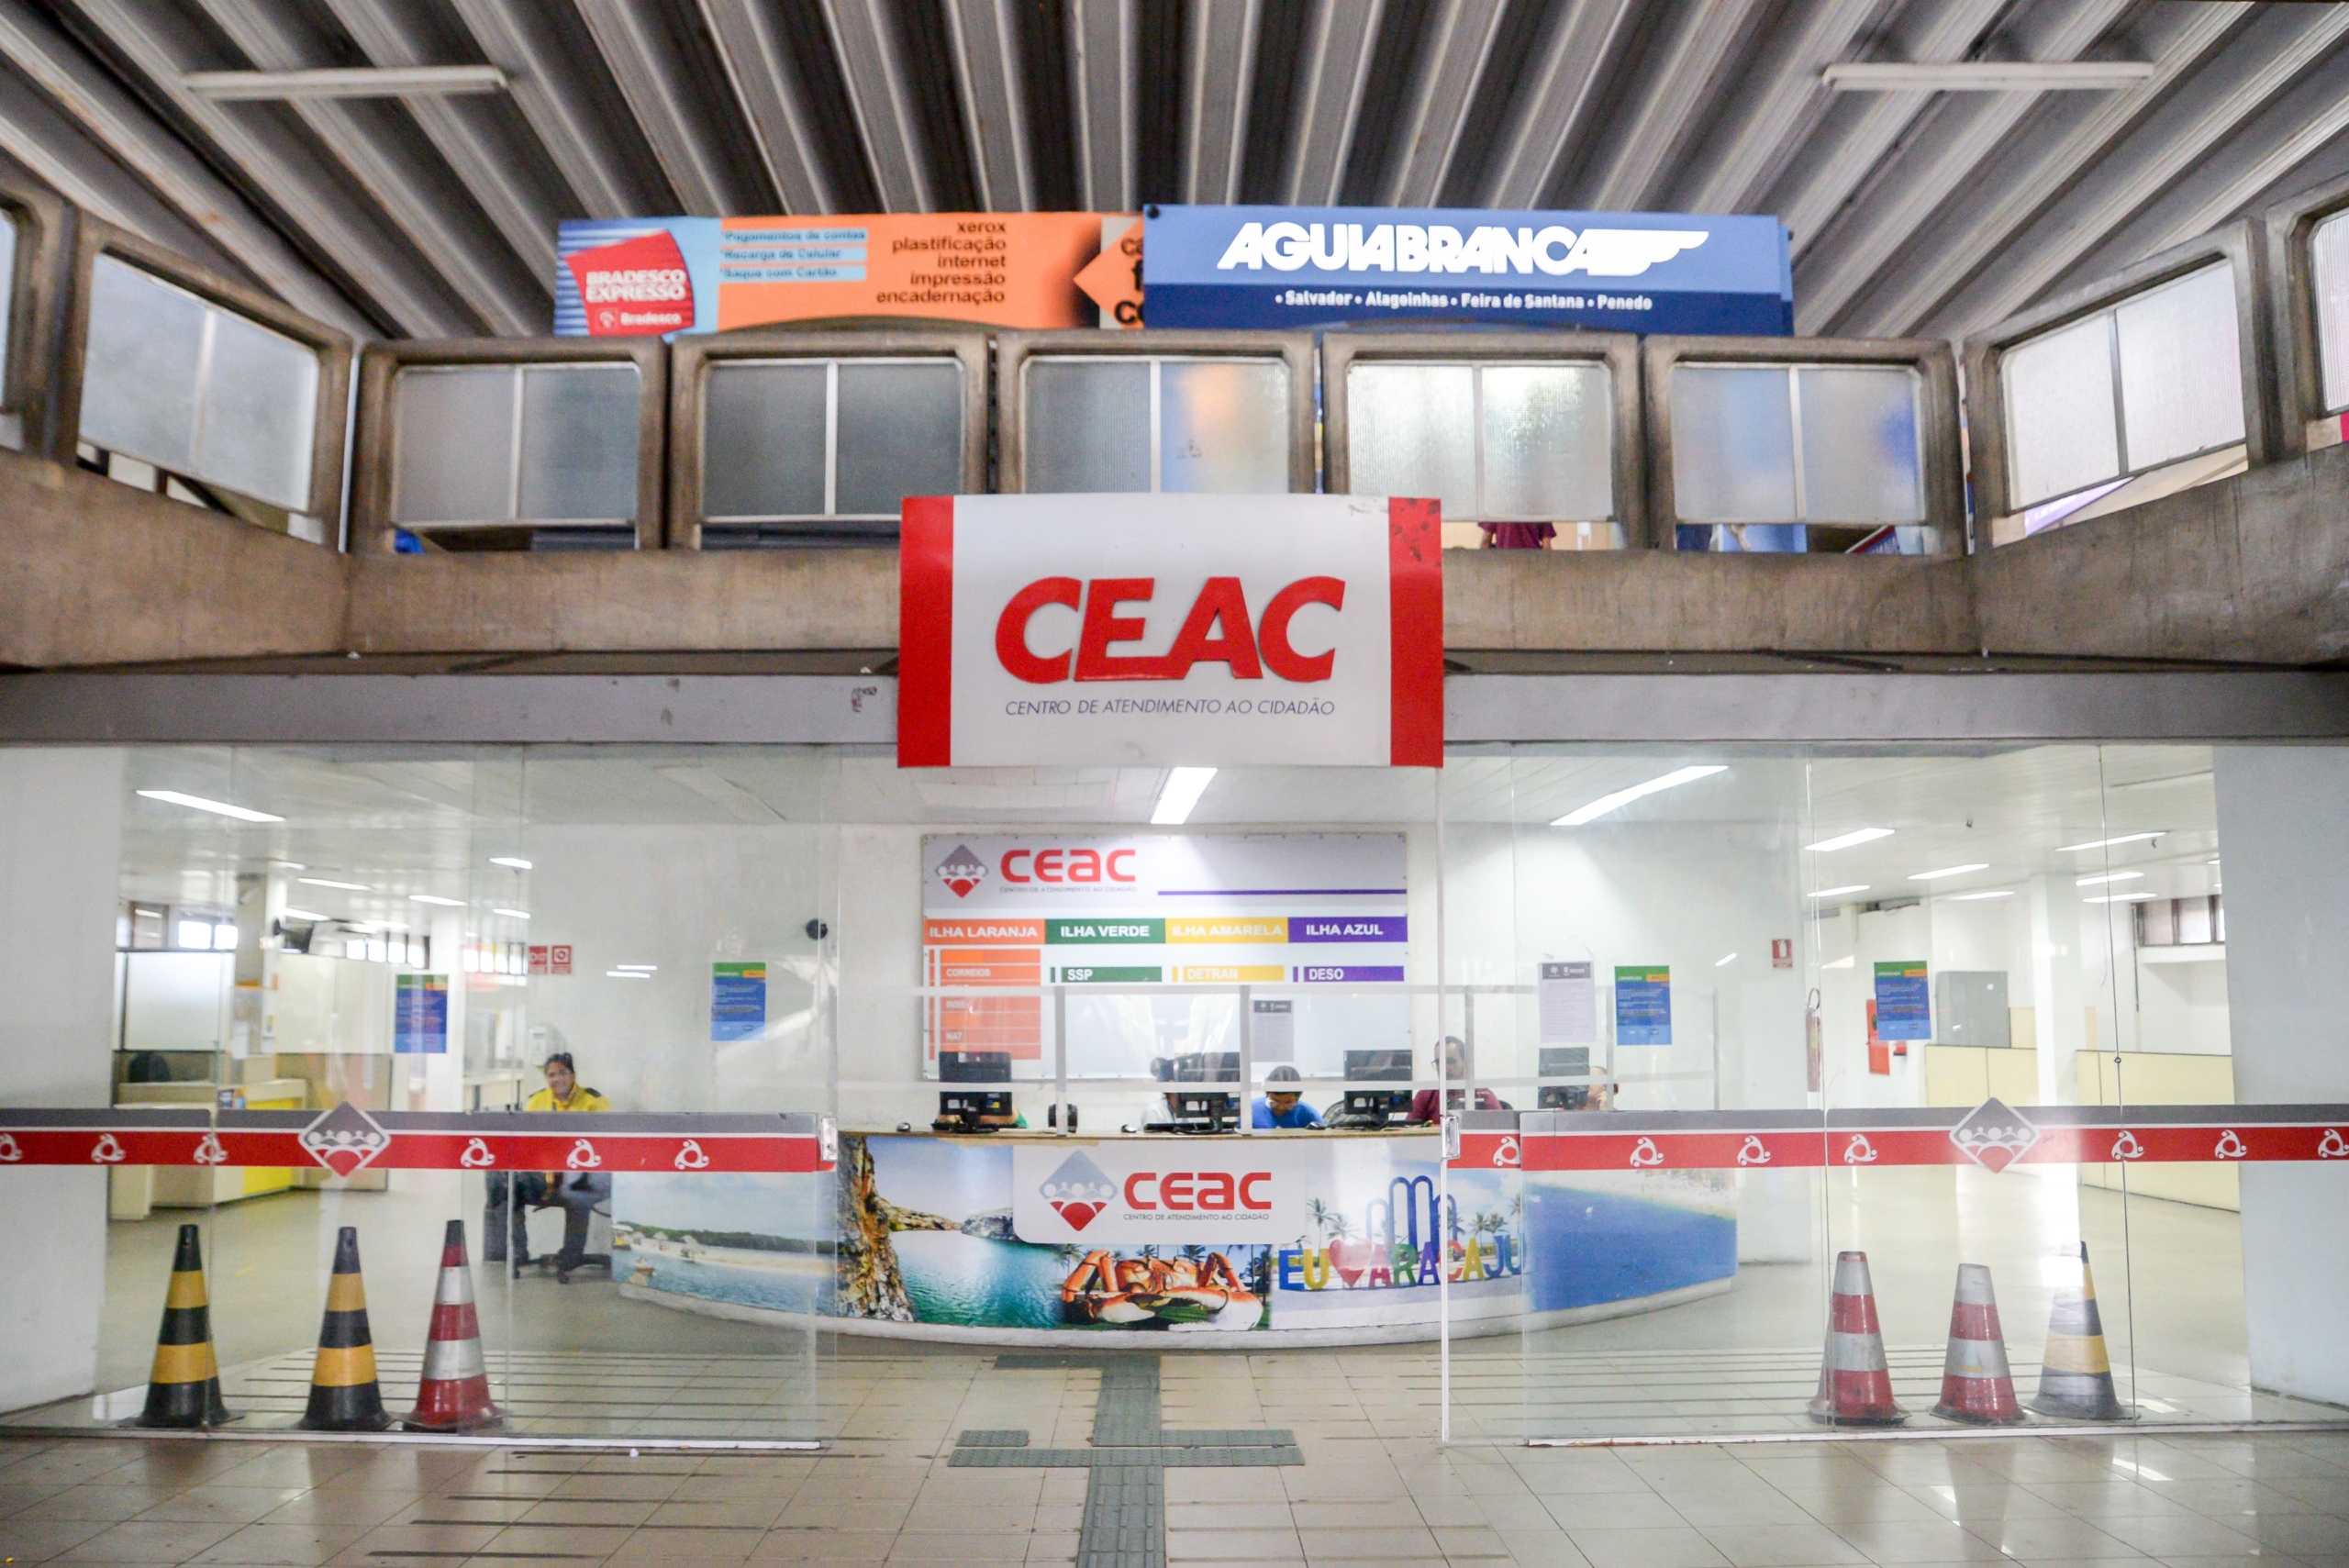 Serviços disponibilizados no Ceac da Rodoviária Nova estão temporariamente suspensos devido a reforma